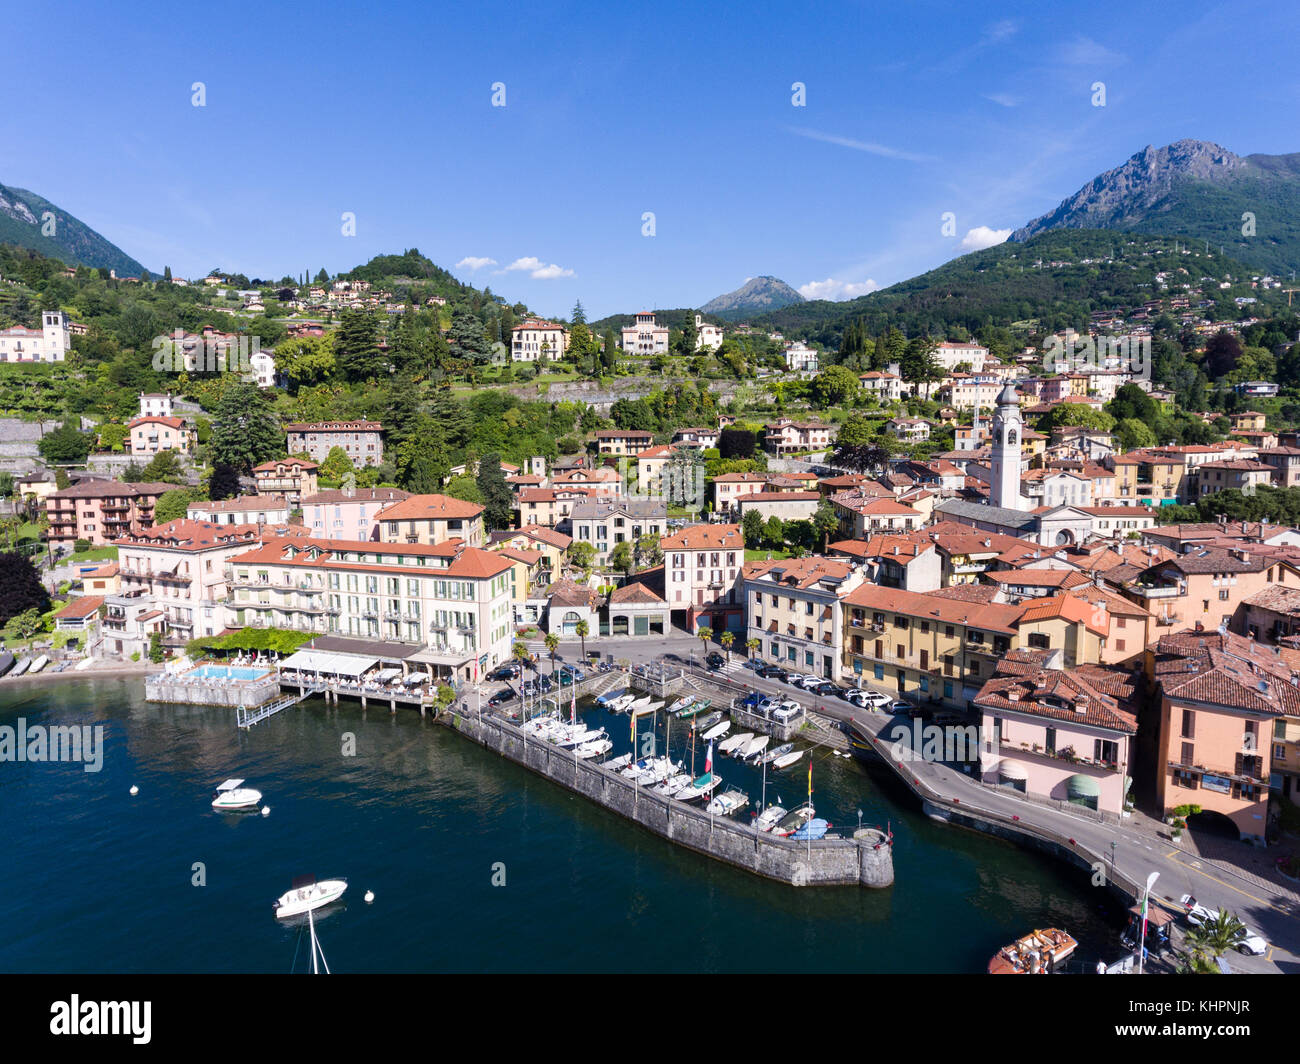 Village of Menaggio - Port and boats - Como lake in Italy Stock Photo